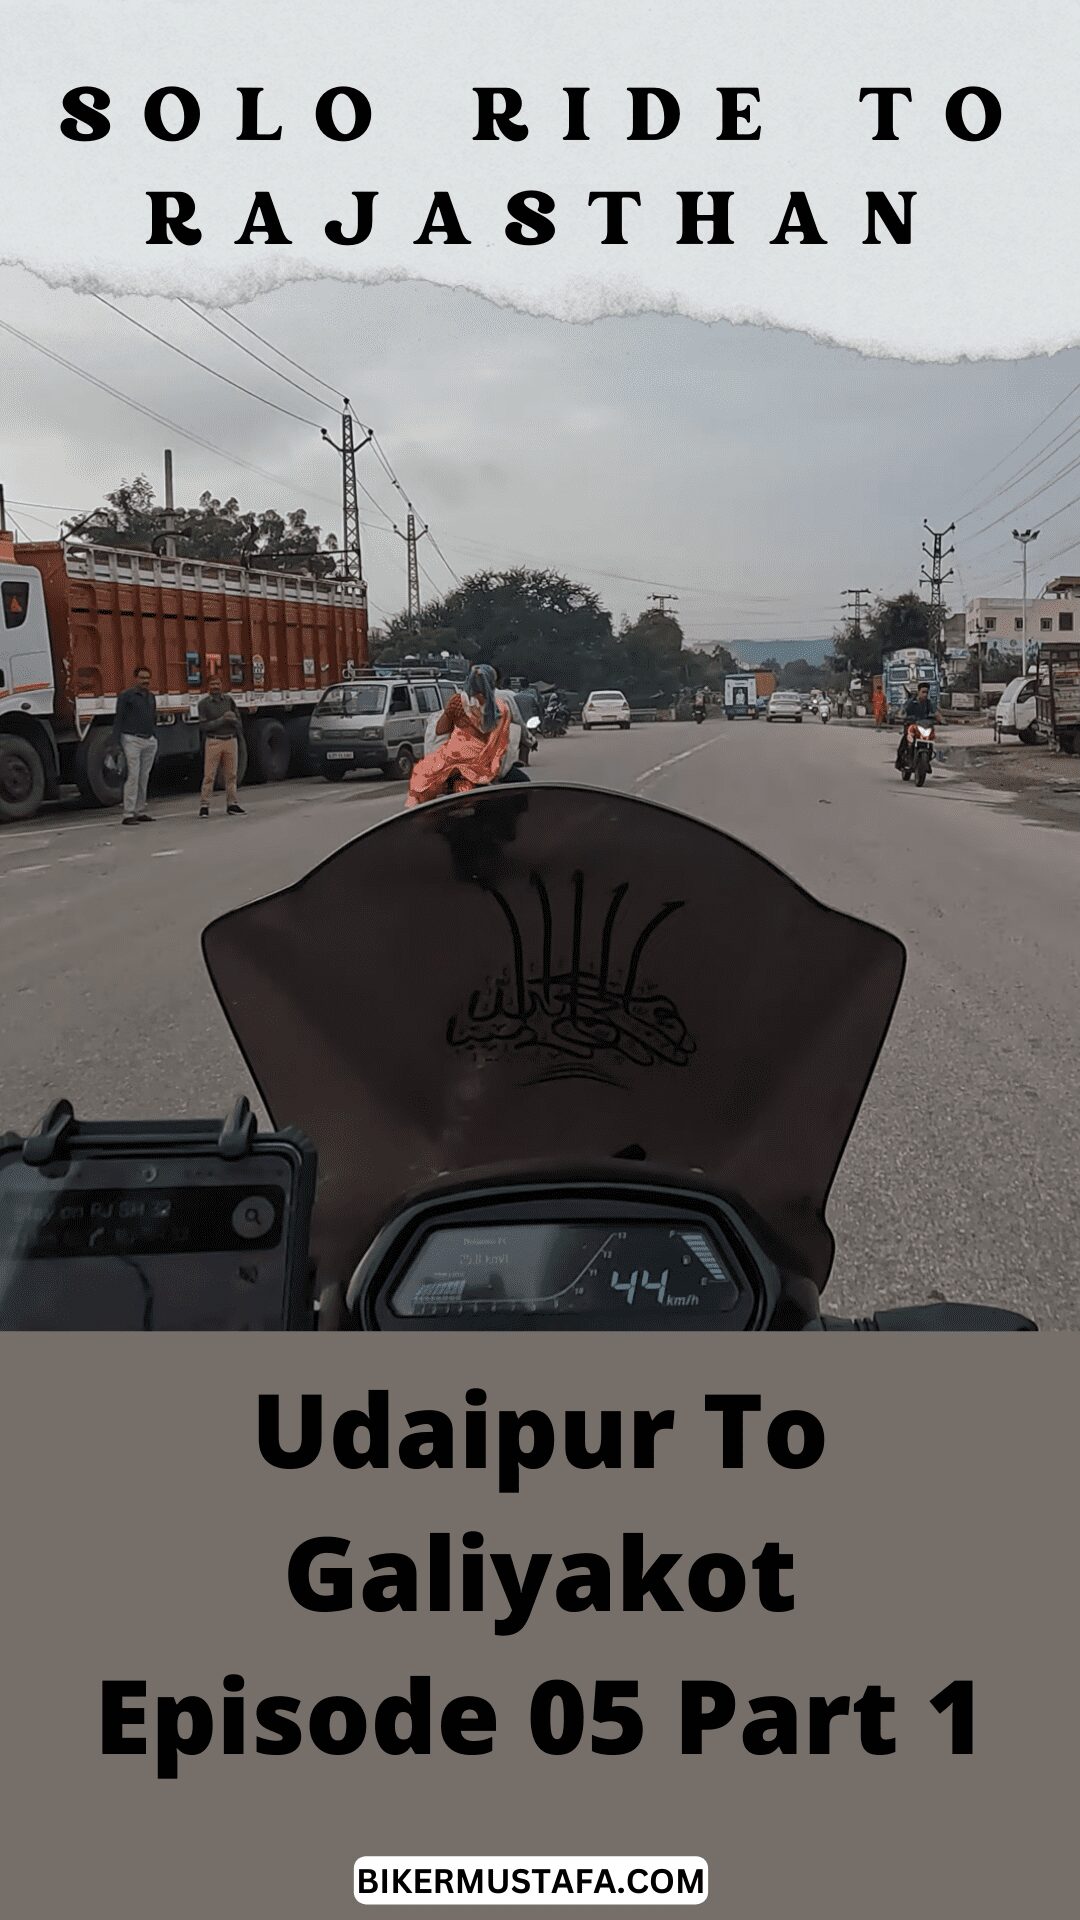 Rajasthan Ride Udaipur To Galiakot Episode 05 